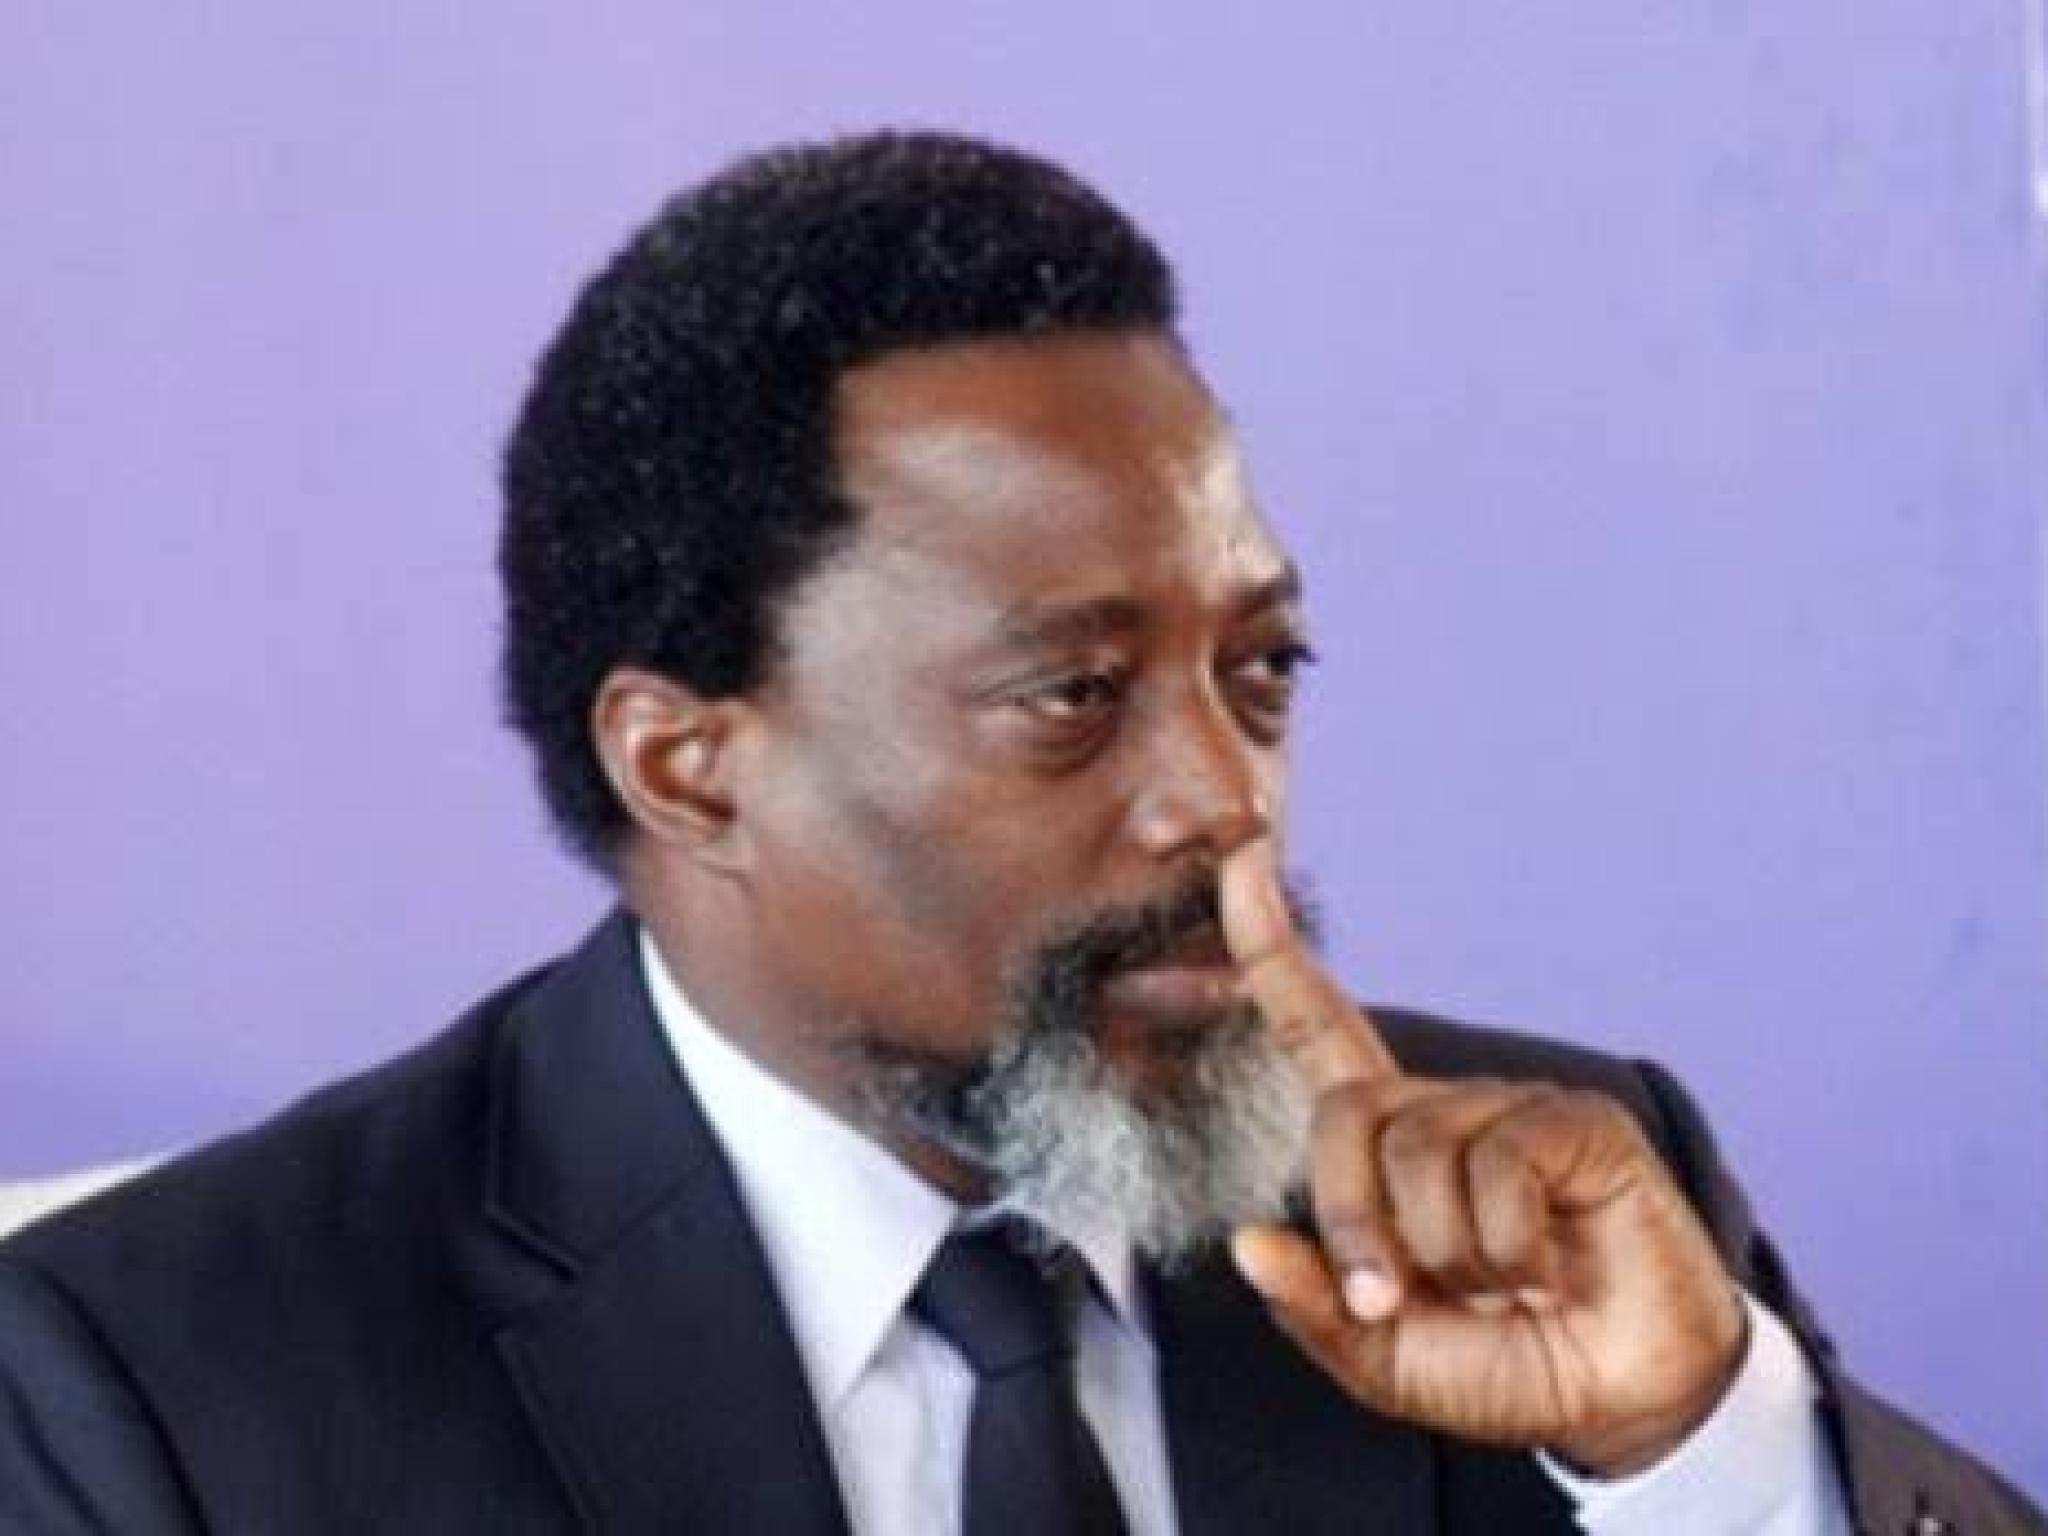 Kabila Kabange 